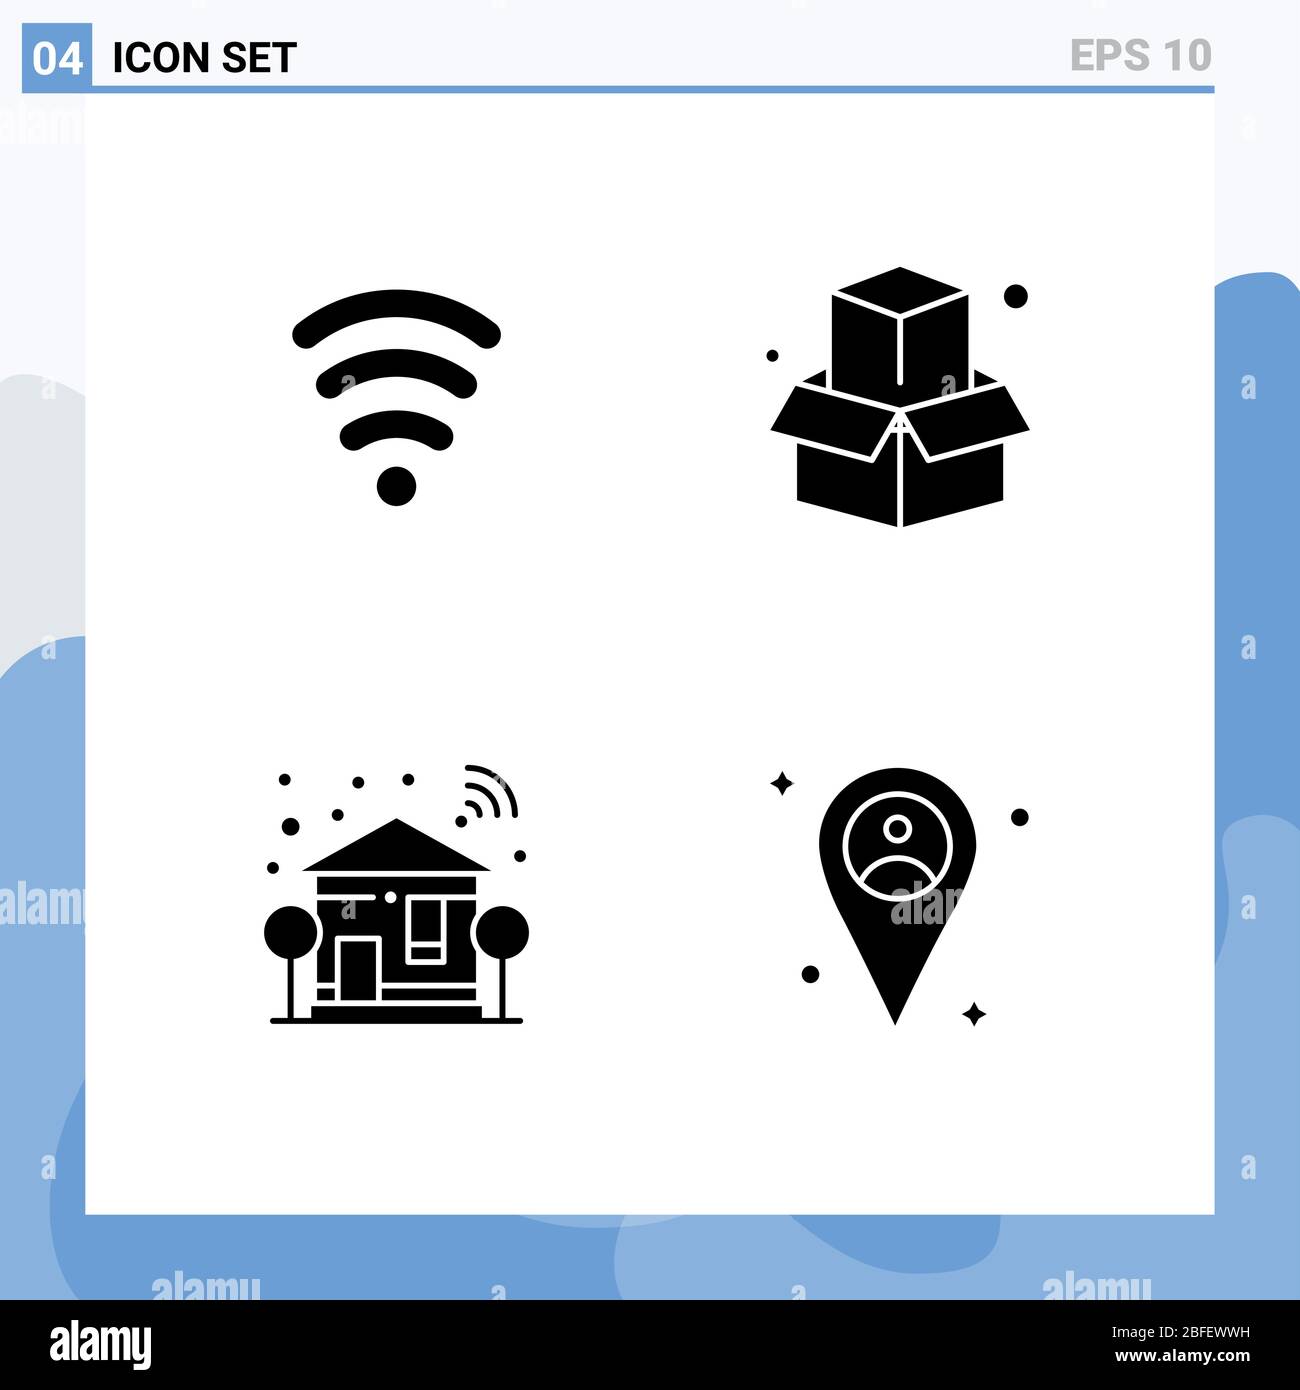 Simboli icone universali Gruppo di 4 moderni glifi solidi di wifi, wifi, box, home, location elementi di progettazione vettoriale modificabili Illustrazione Vettoriale